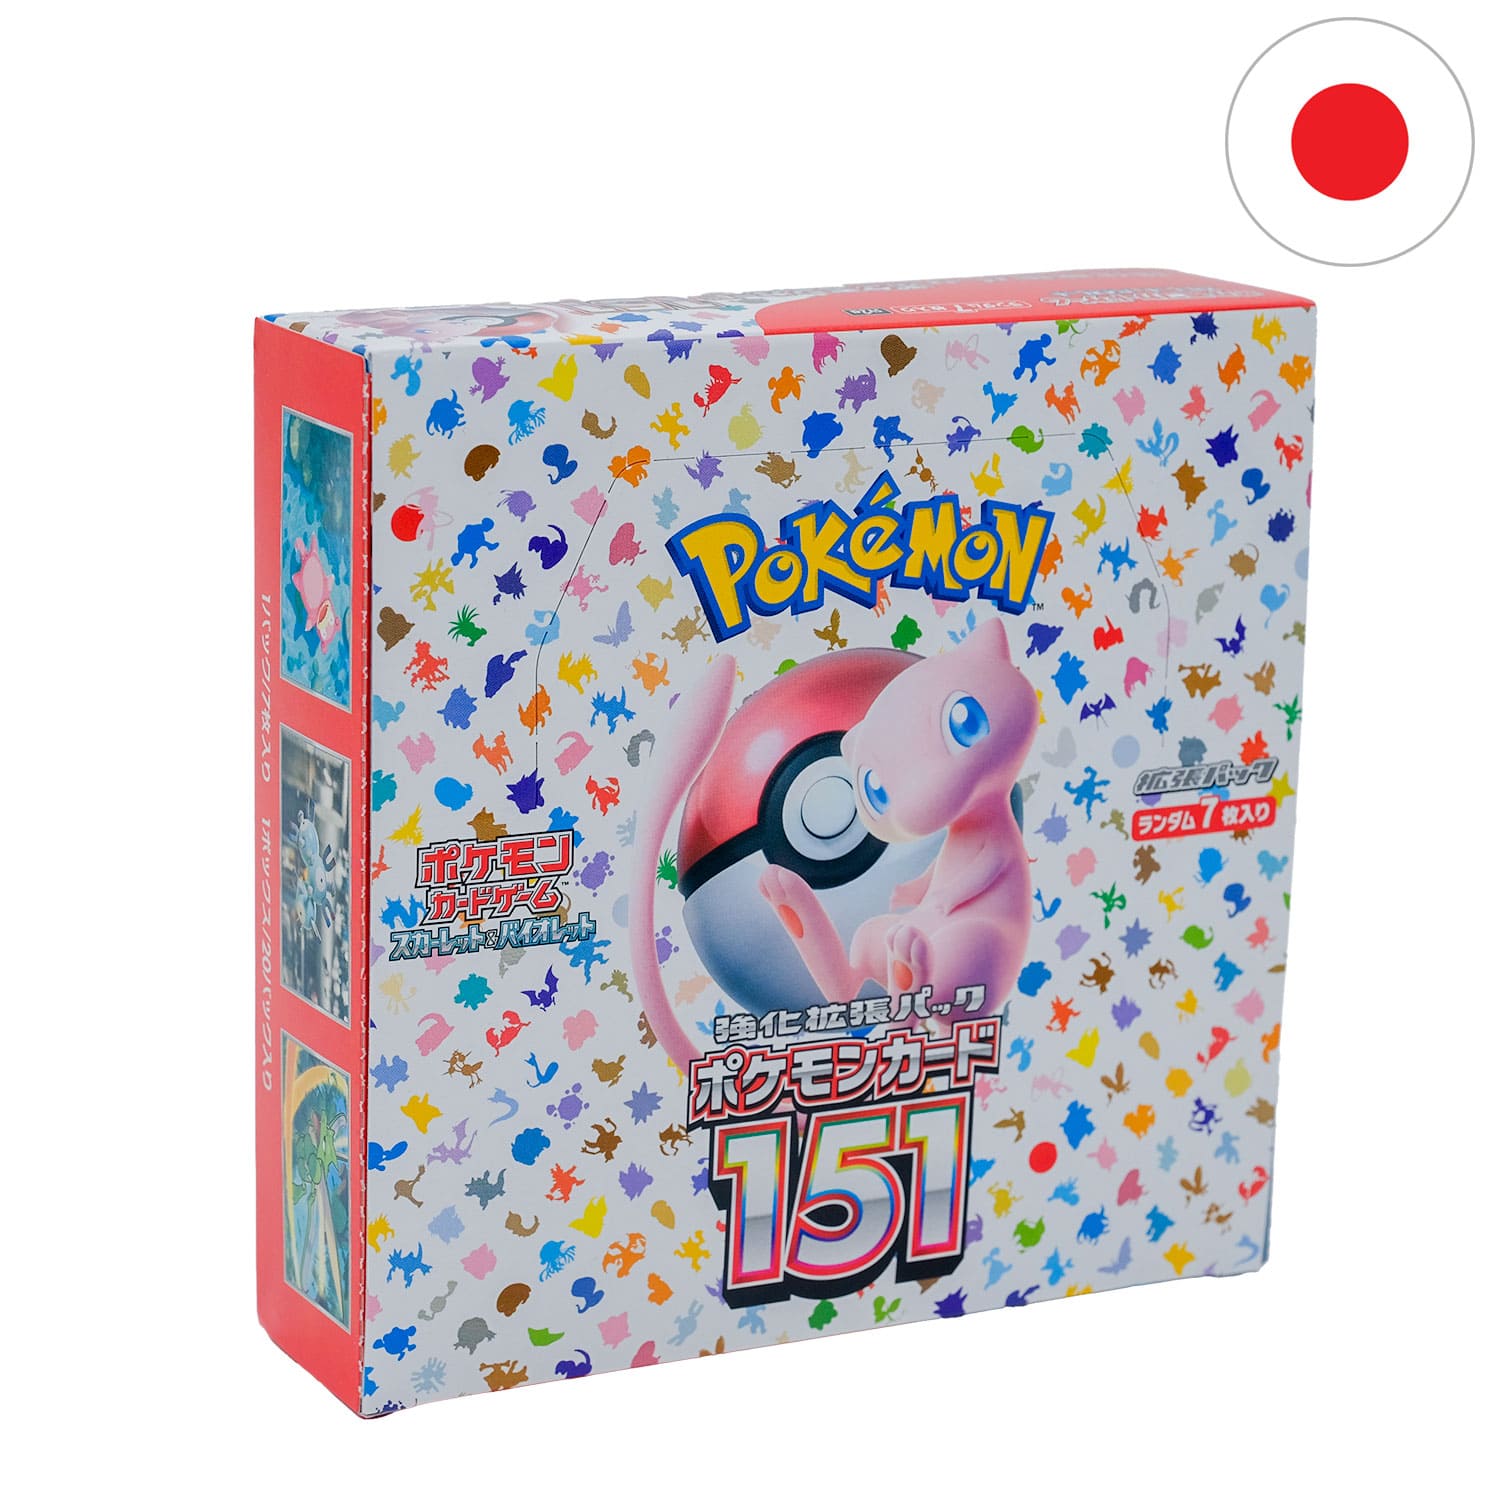 Das japanische Pokemon Display 151 mit Mew auf dem Cover, frontal & schräg als Hauptbild mit der Flagge Japans in der Ecke.